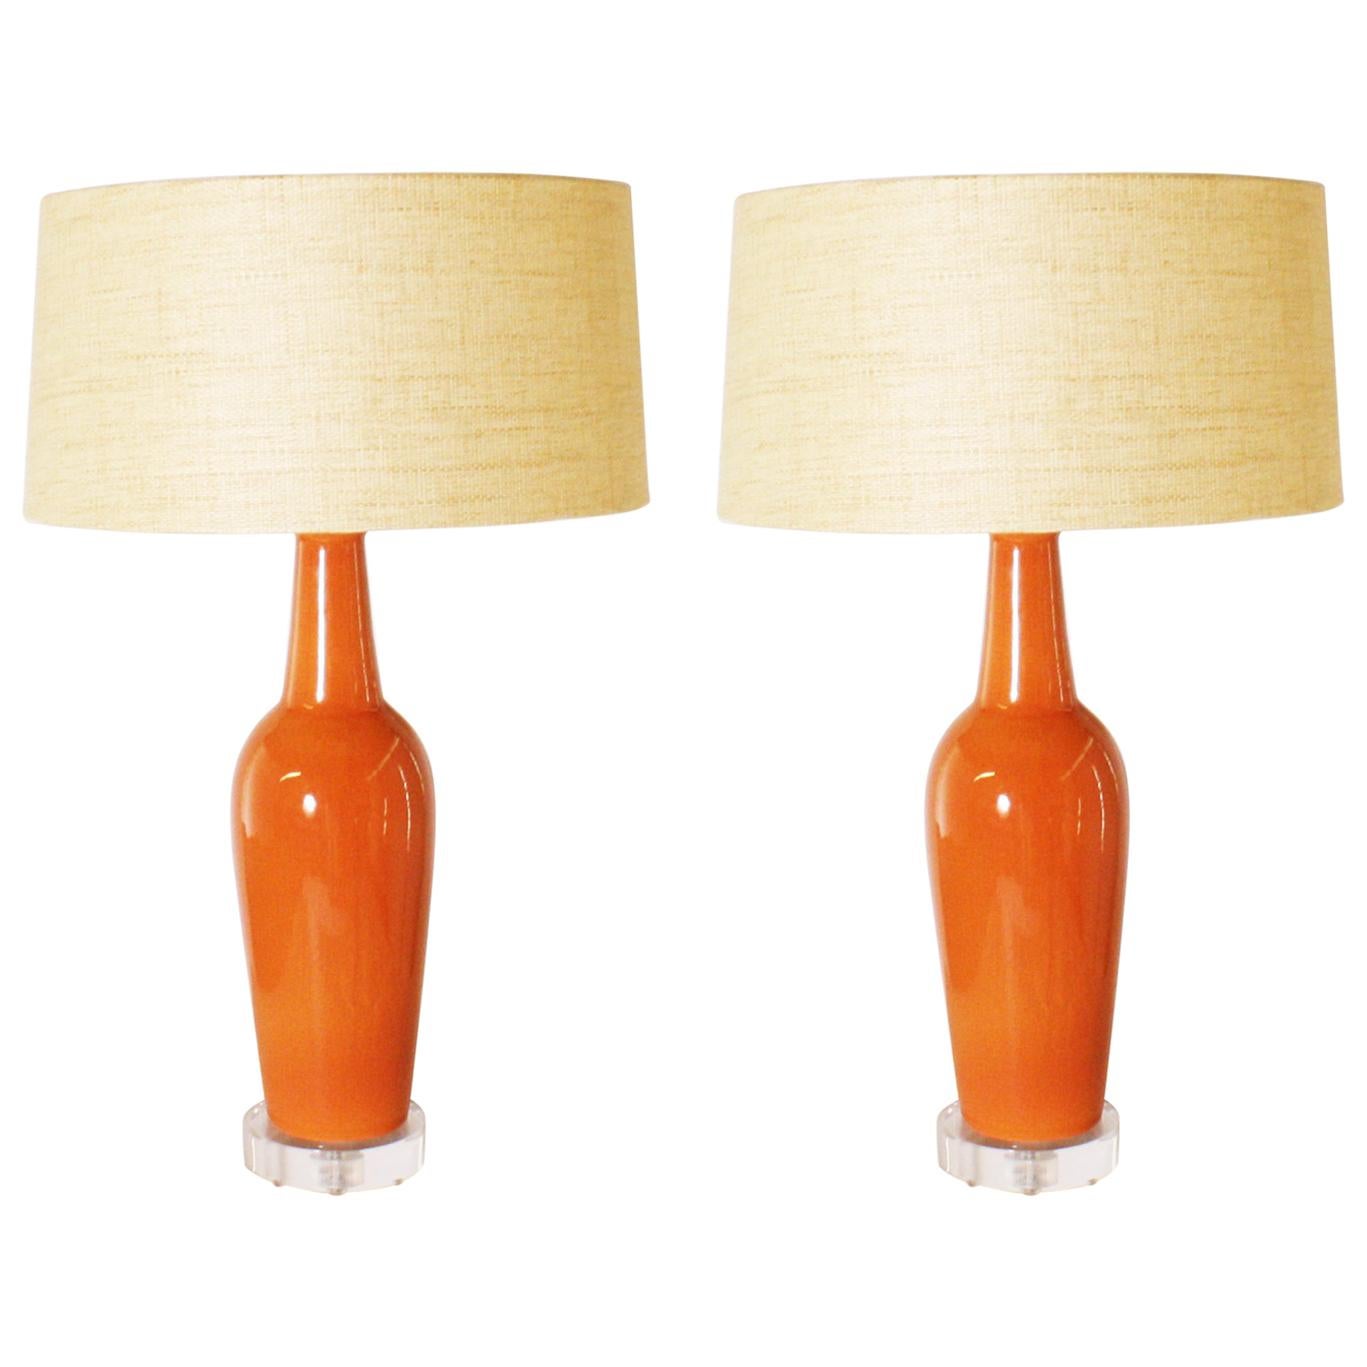 Pair of Orange Ceramic Ginger Jar Lamps, circa 1940